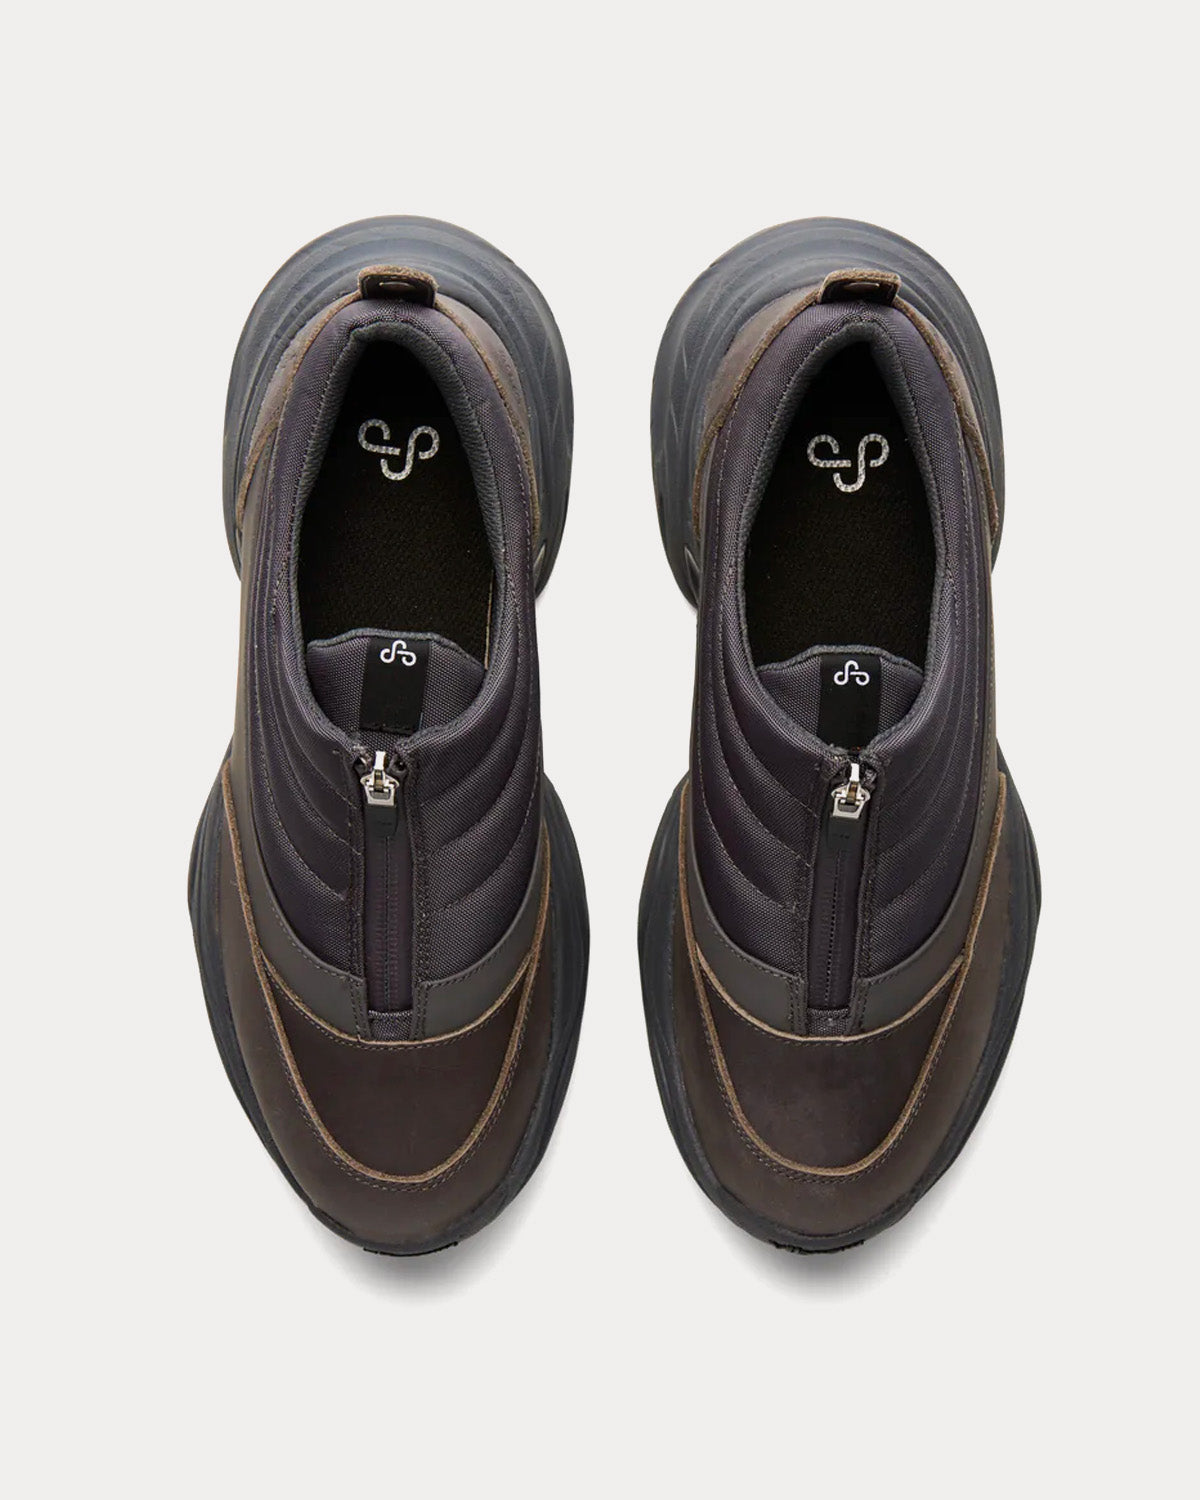 OAO - Fountain Grey Slip On Sneakers